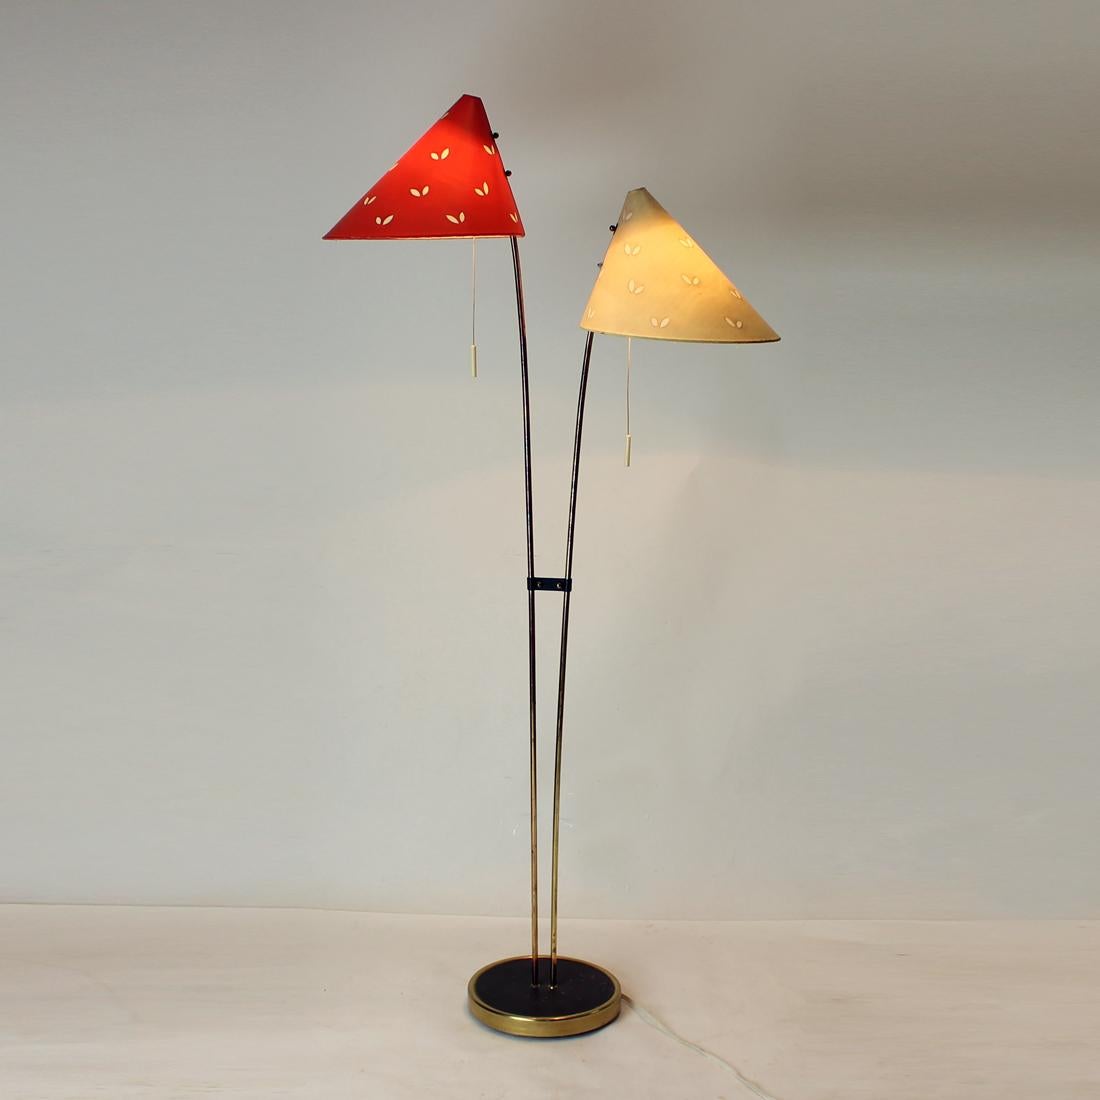 Superbe lampadaire en très bon état ! Cette lampe a été produite en Tchécoslovaquie dans les années 1960 par Zukov. La construction et les tiges en laiton sont très solides. Le laiton ne présente qu'une légère décoloration due à l'âge. La lampe